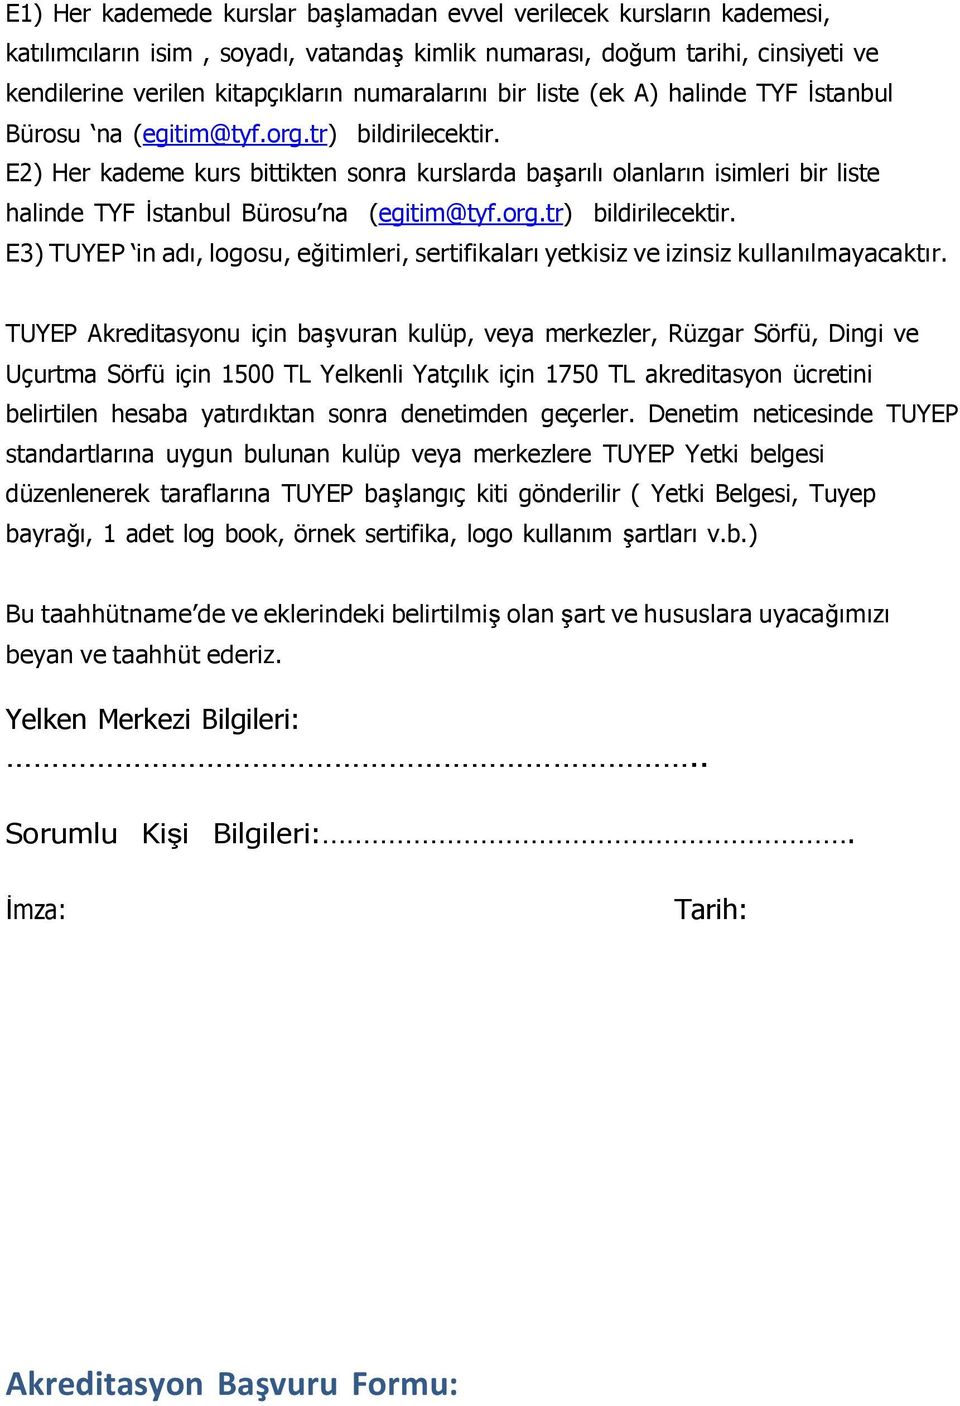 E2) Her kademe kurs bittikten sonra kurslarda başarılı olanların isimleri bir liste halinde TYF İstanbul Bürosu na (egitim@tyf.org.tr) bildirilecektir.